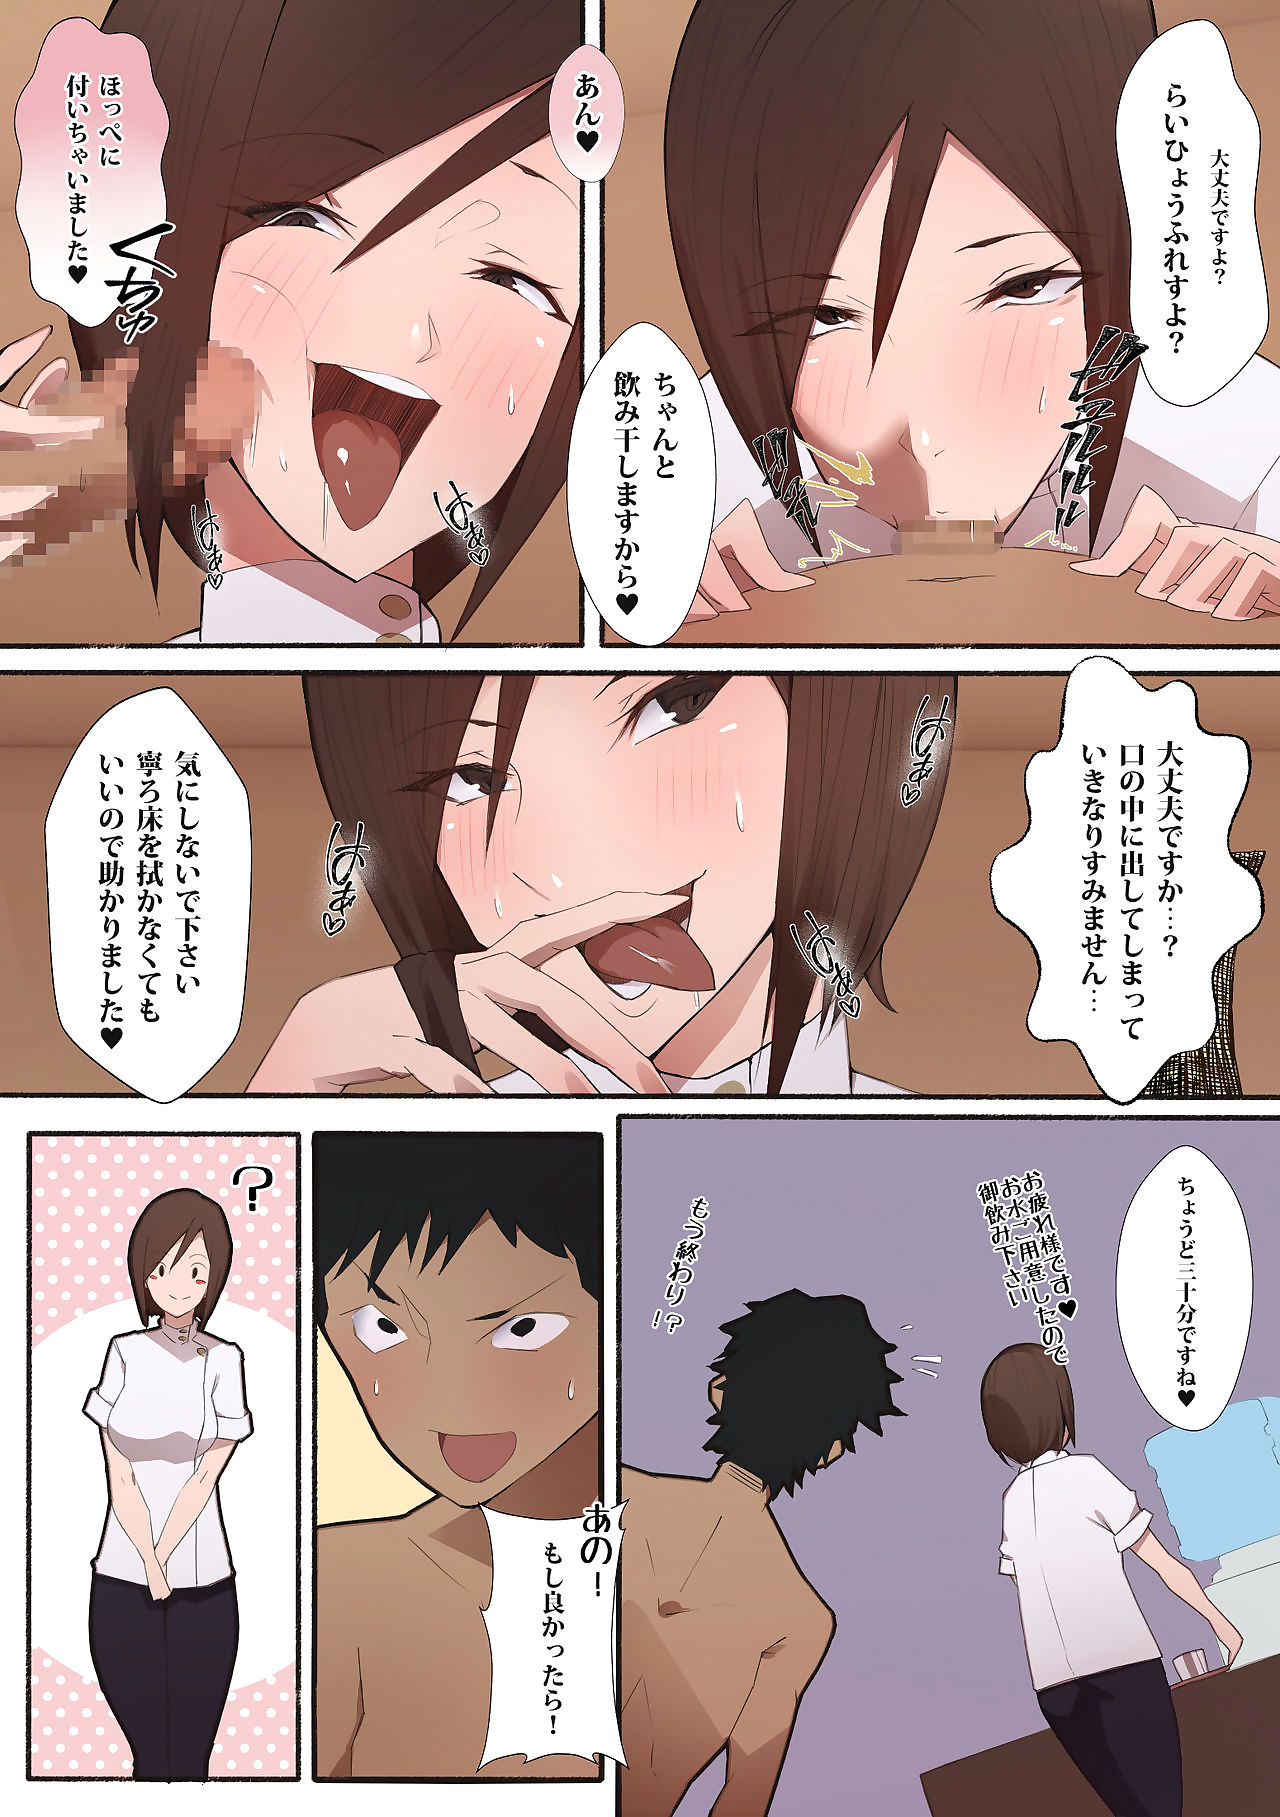 hataraku oneesan - エロ サロン page 1